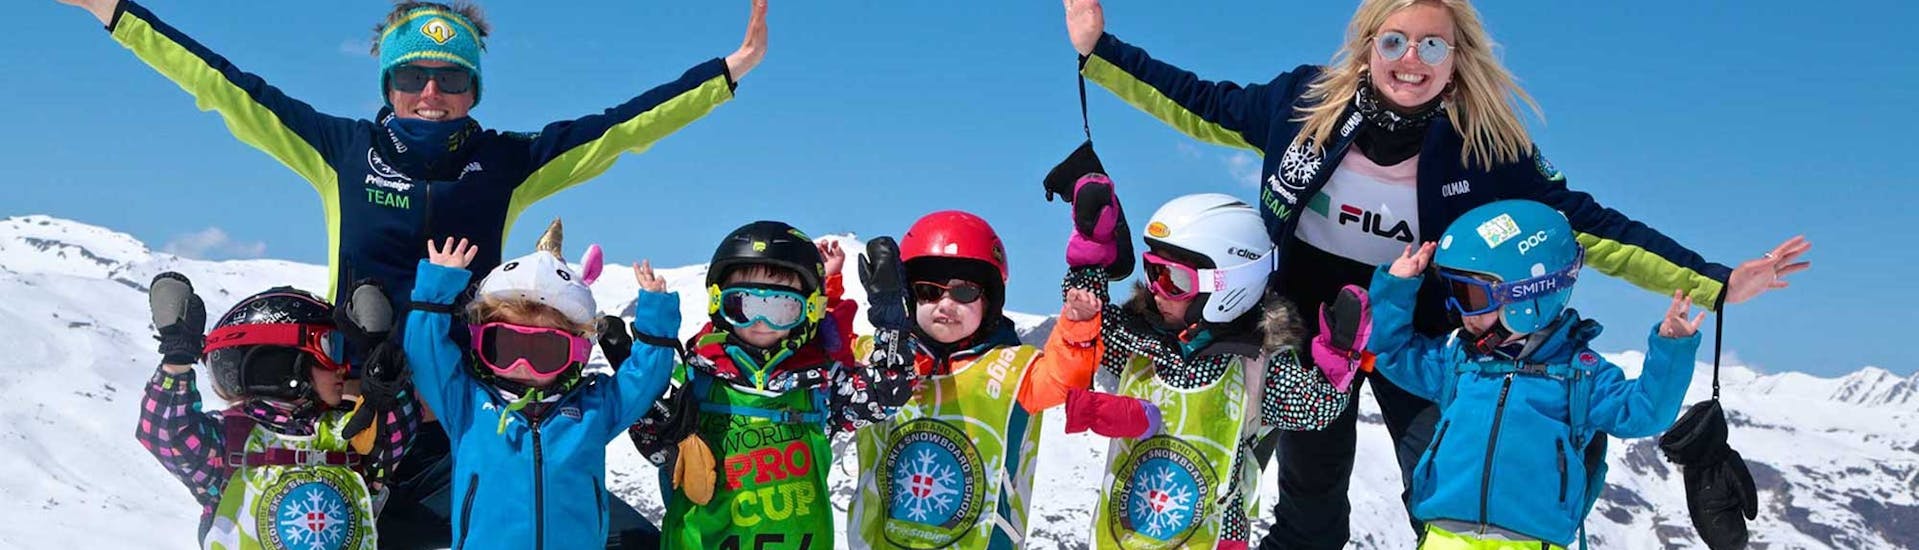 Clases de esquí para niños (5-13 años) - Máximo 8 por grupo.